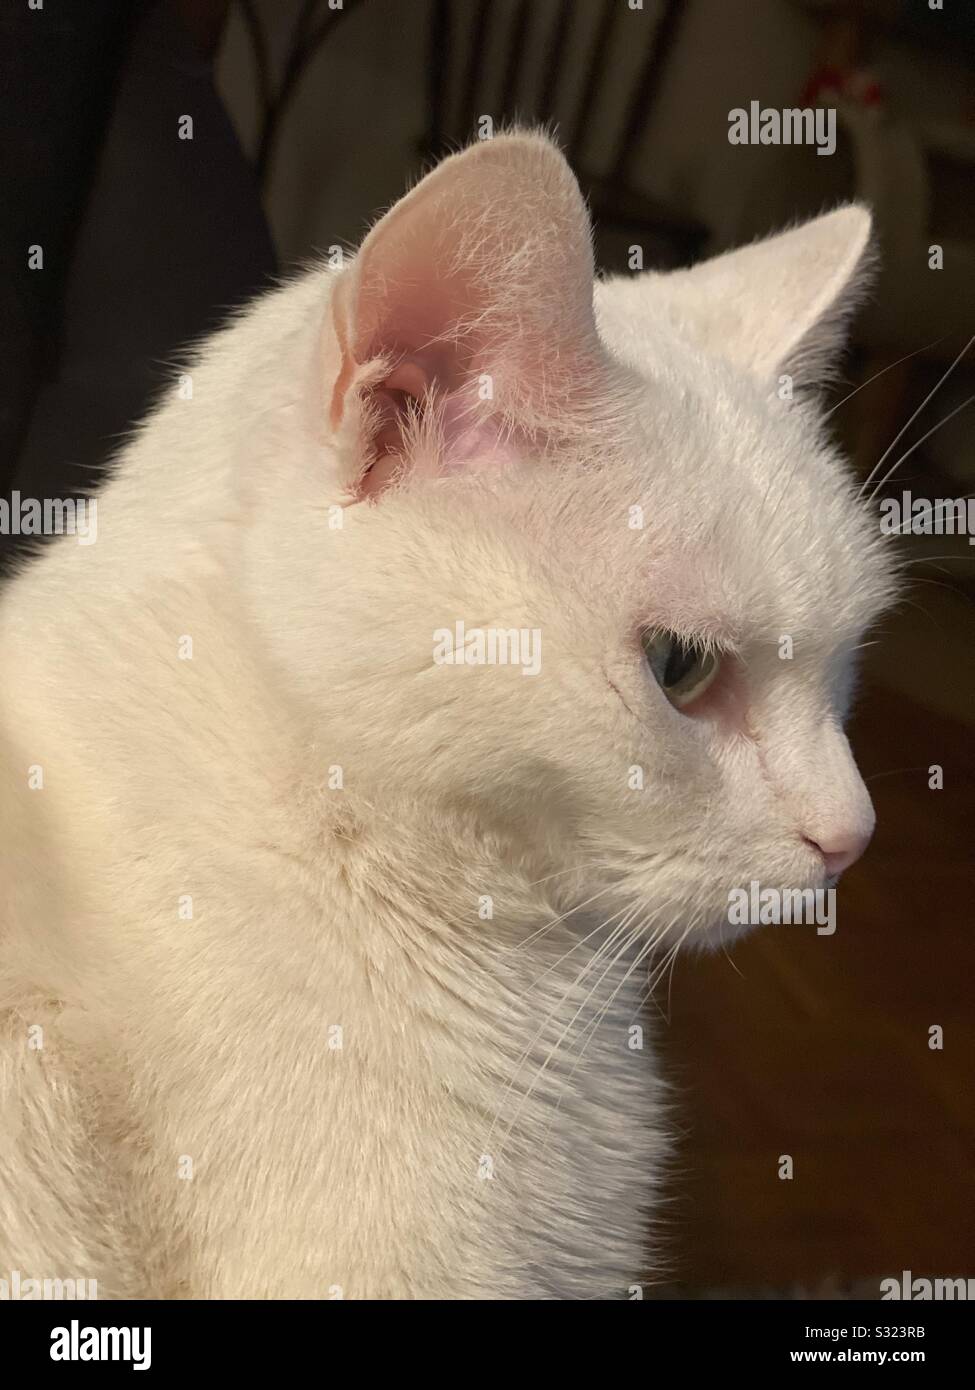 White cat portrait Stock Photo